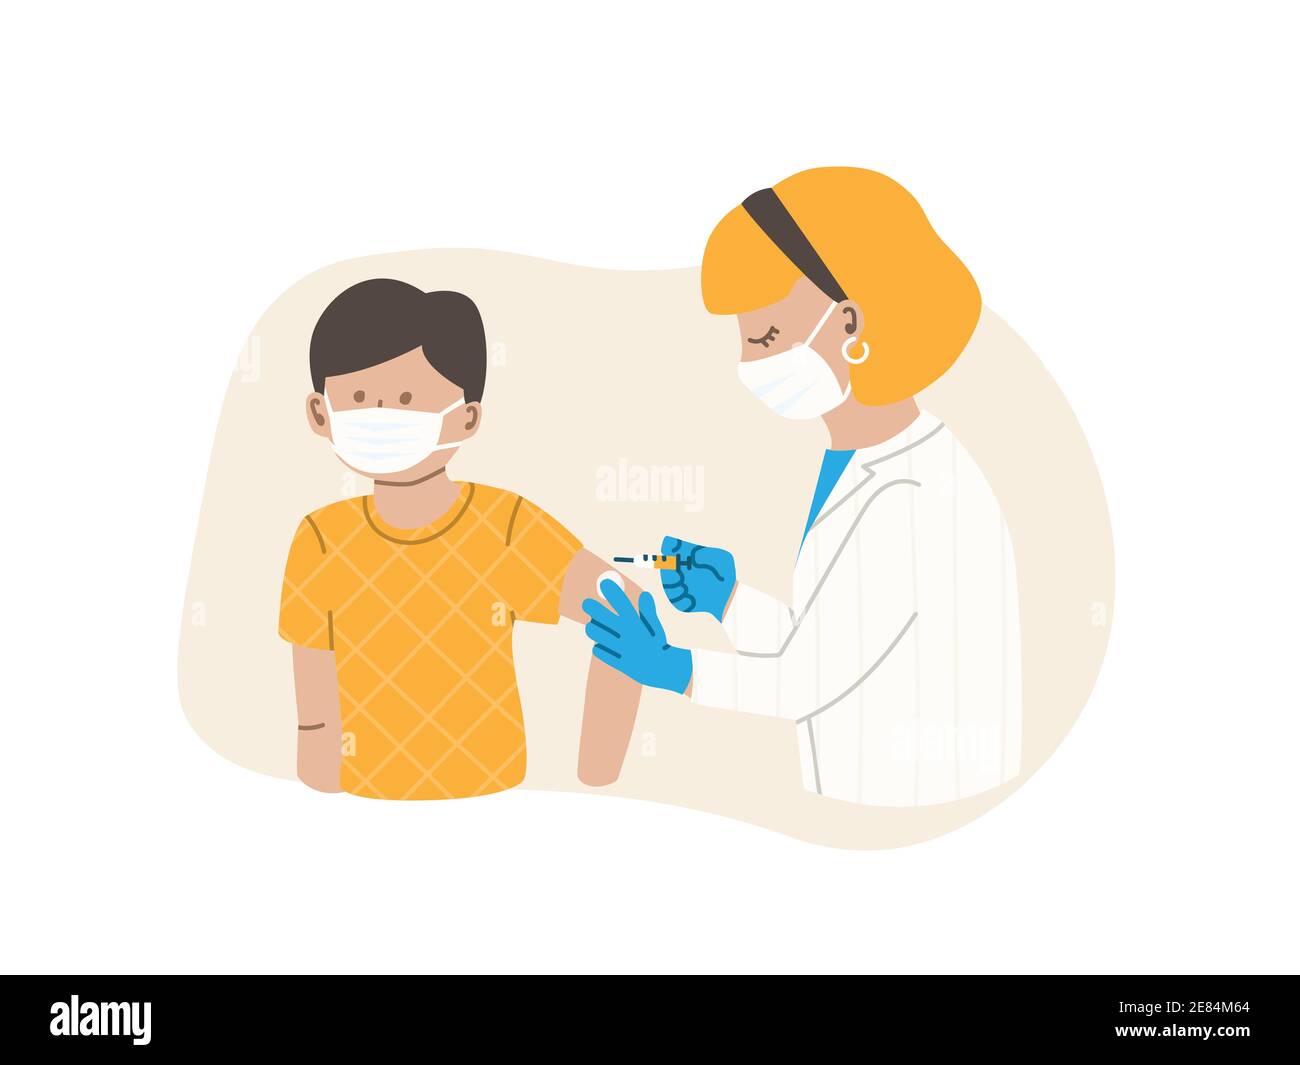 Le médecin ou l'infirmière injecte le vaccin. Le patient est un enfant ou un adolescent, un garçon. Concept de vaccination contre la grippe. Vaccin contre le coronavirus. Illustration vectorielle plate EPS 10. Illustration de Vecteur